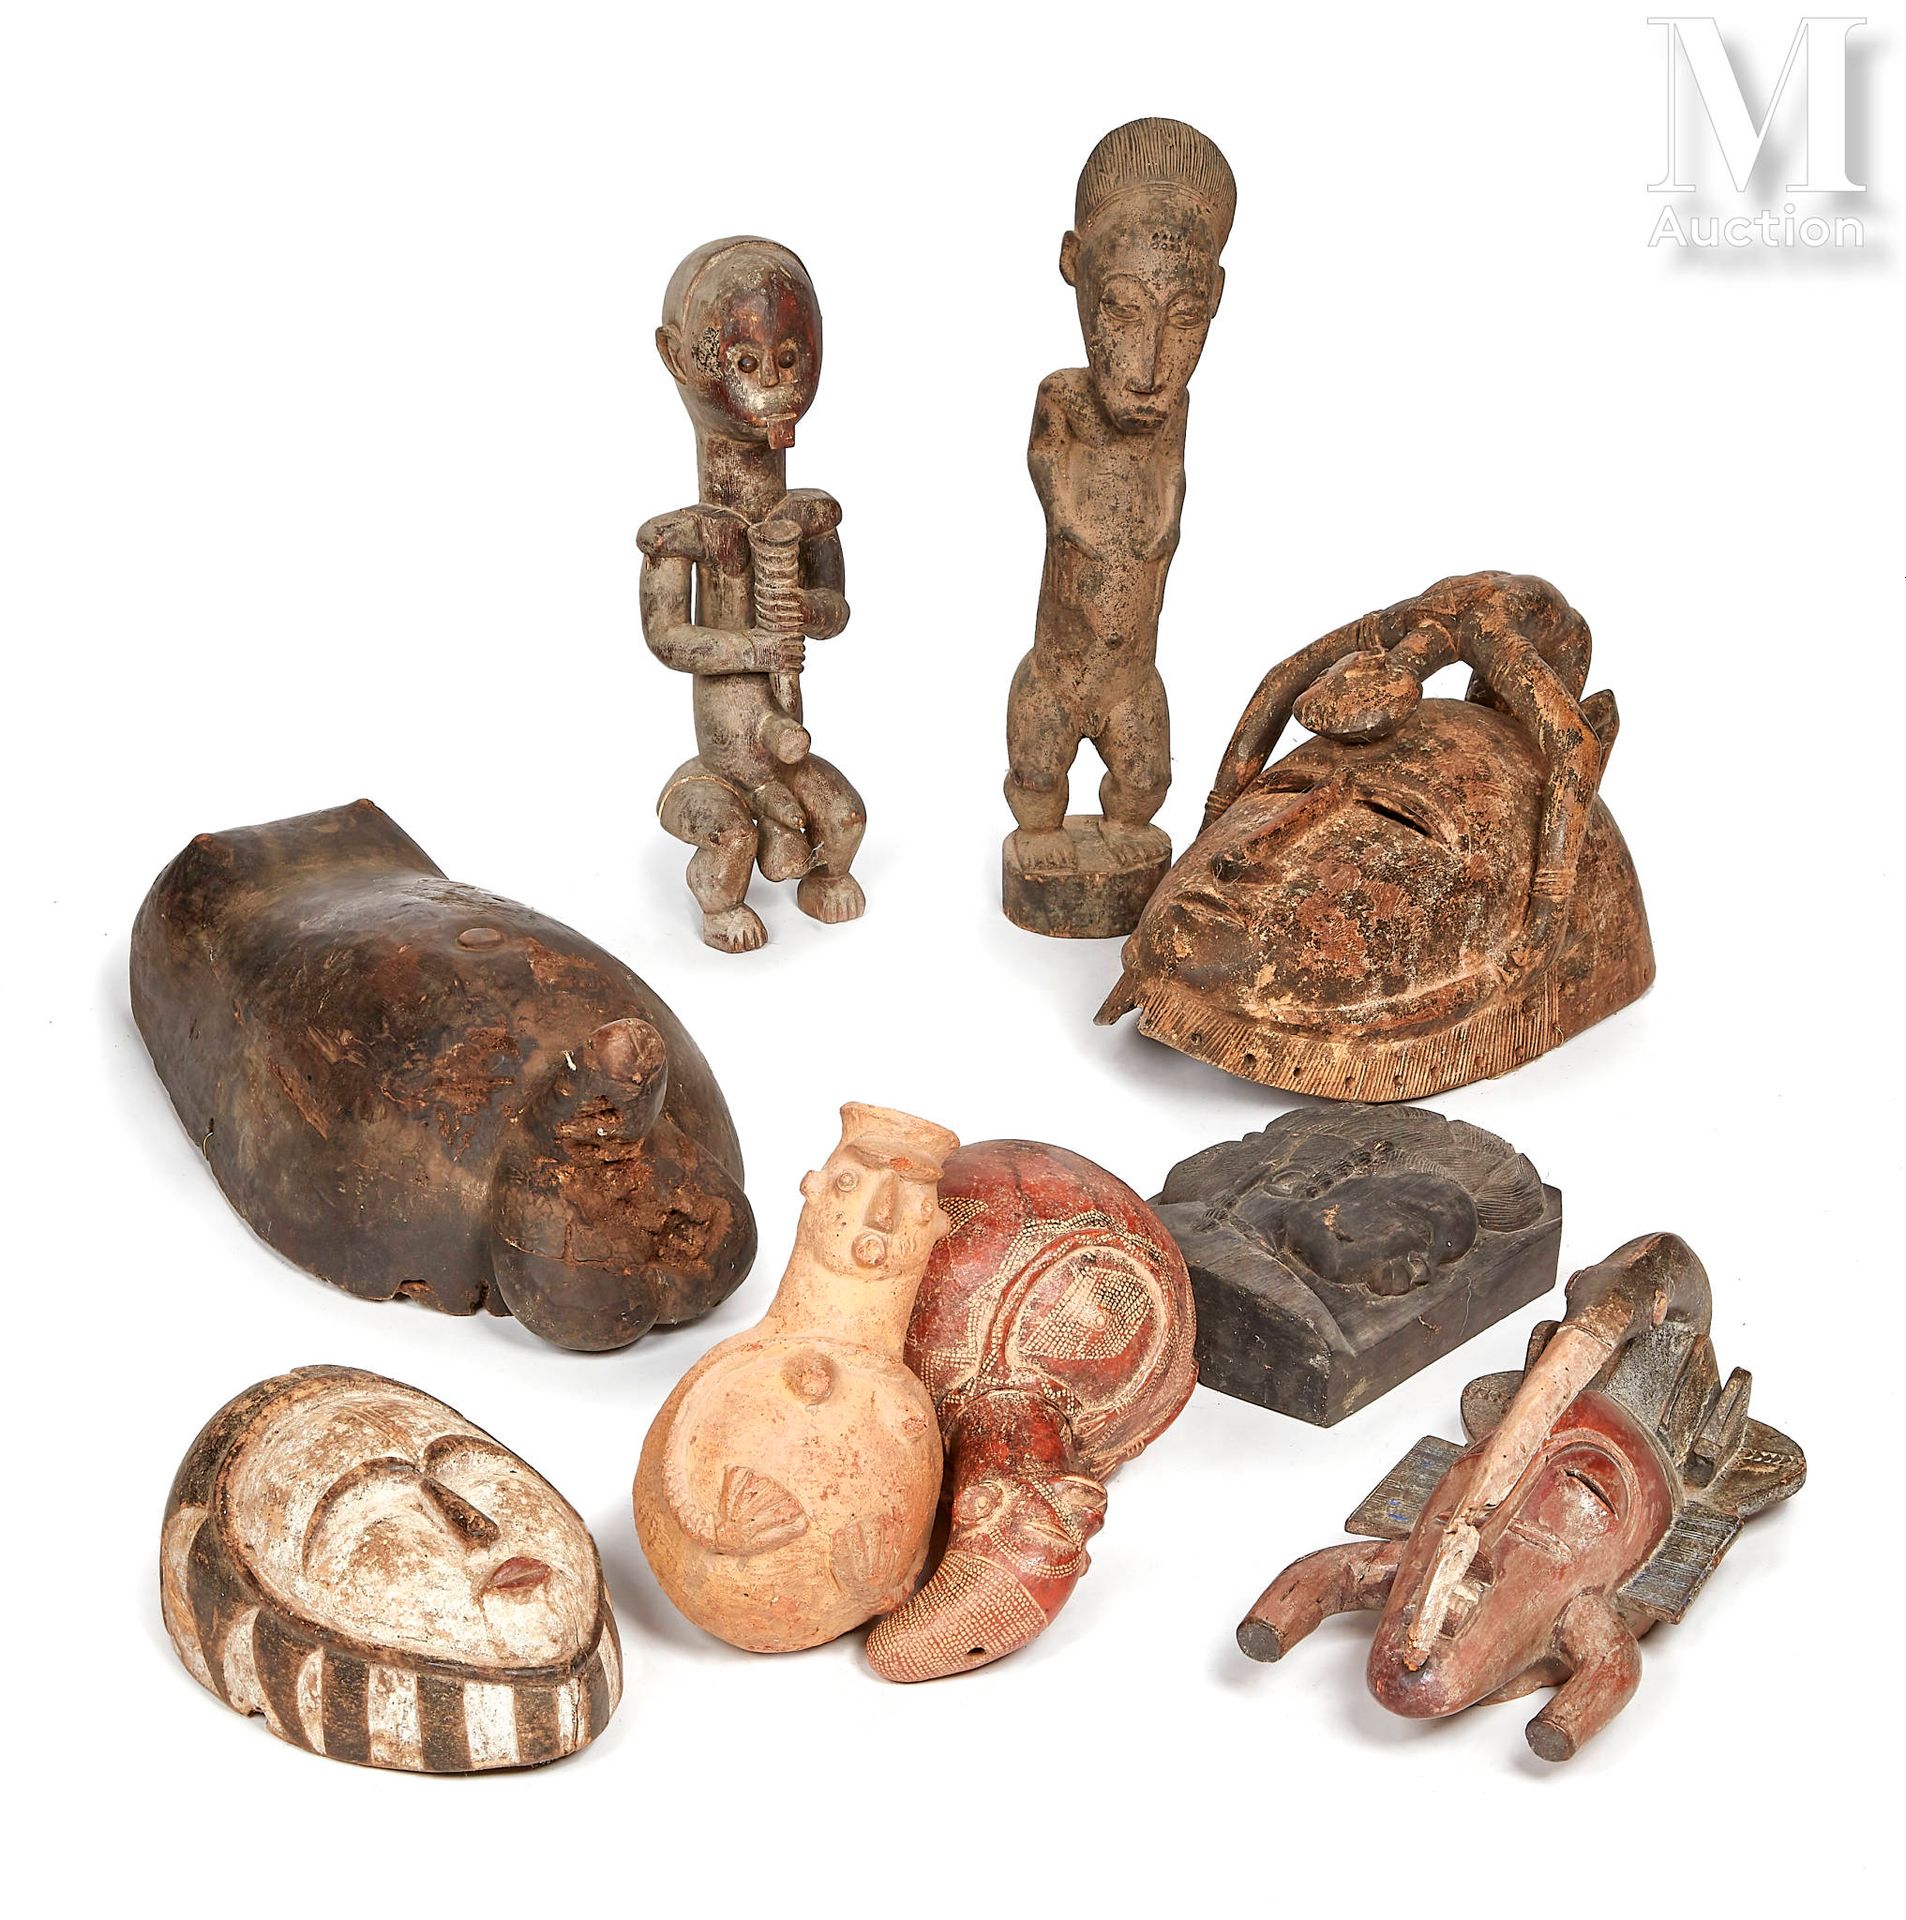 10 masques et statues Nello stile dell'Africa antica
Venduto così com'è